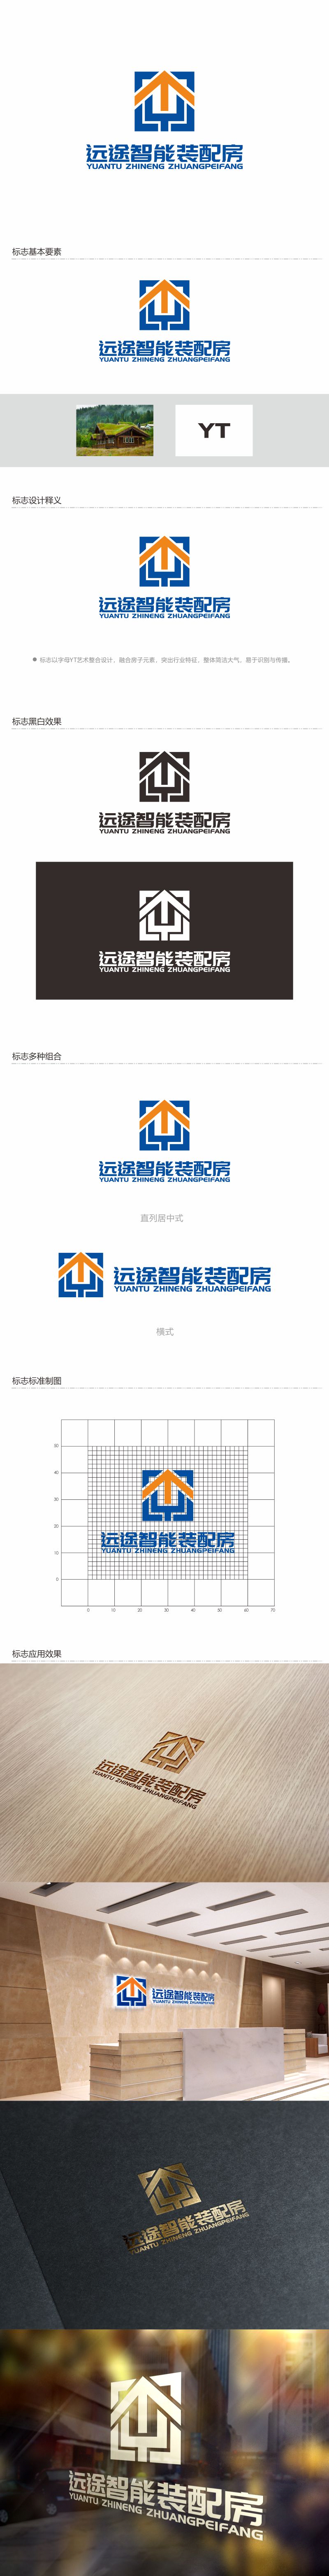 何嘉健的江苏远途智能装配房有限公司logo设计